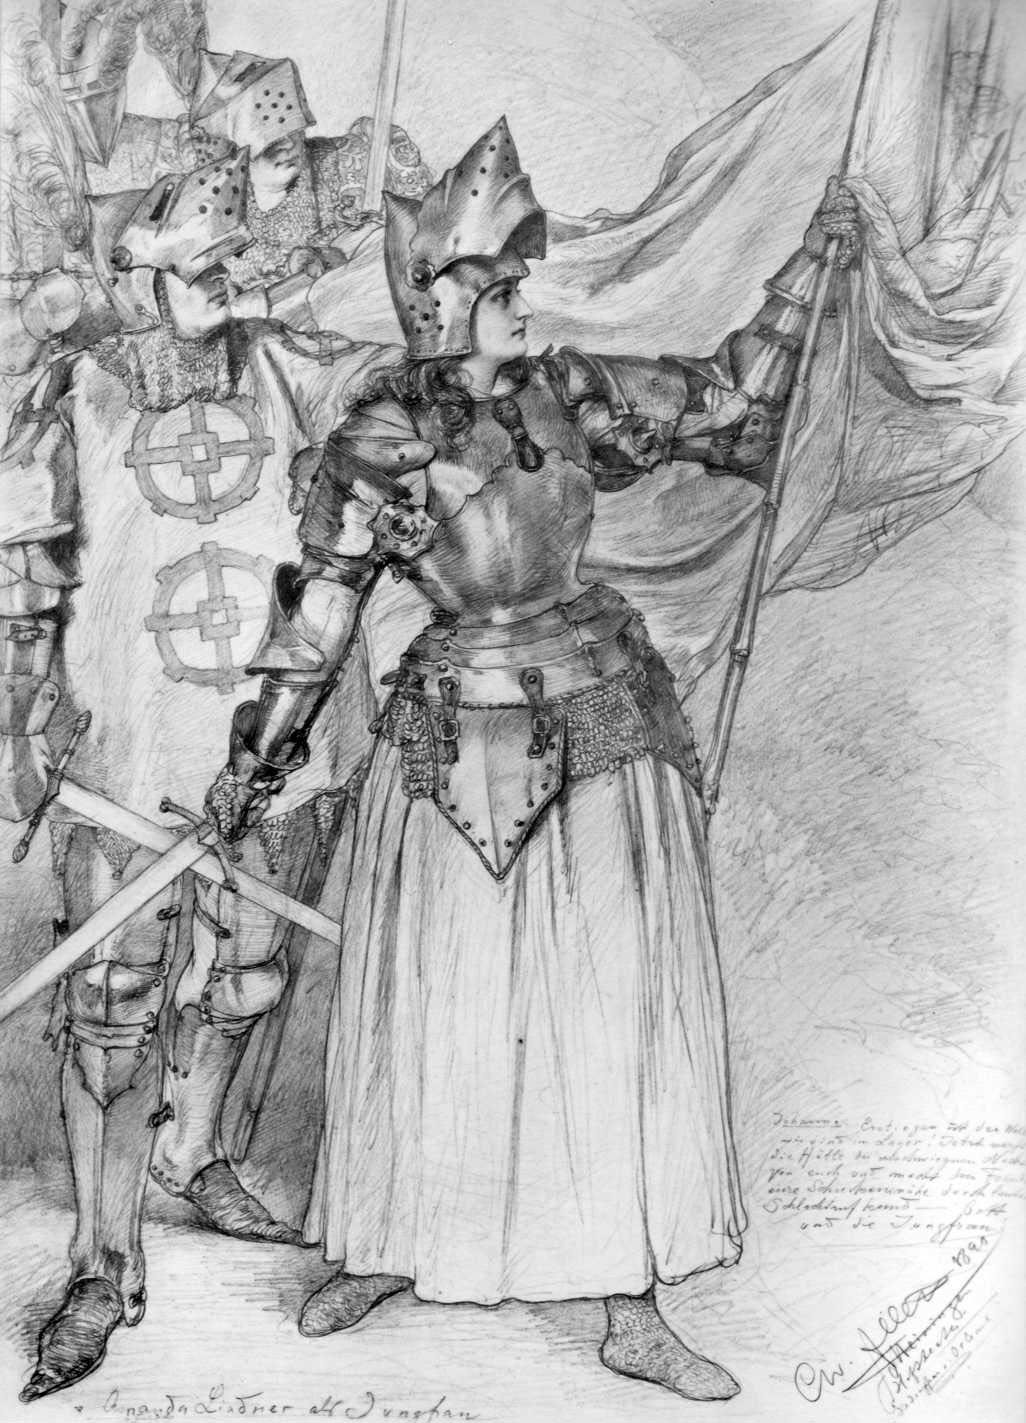 Кристиан Вильгельм Аллерс. "Актриса Аманда Линднер как Орлеанская Дева". 1891.